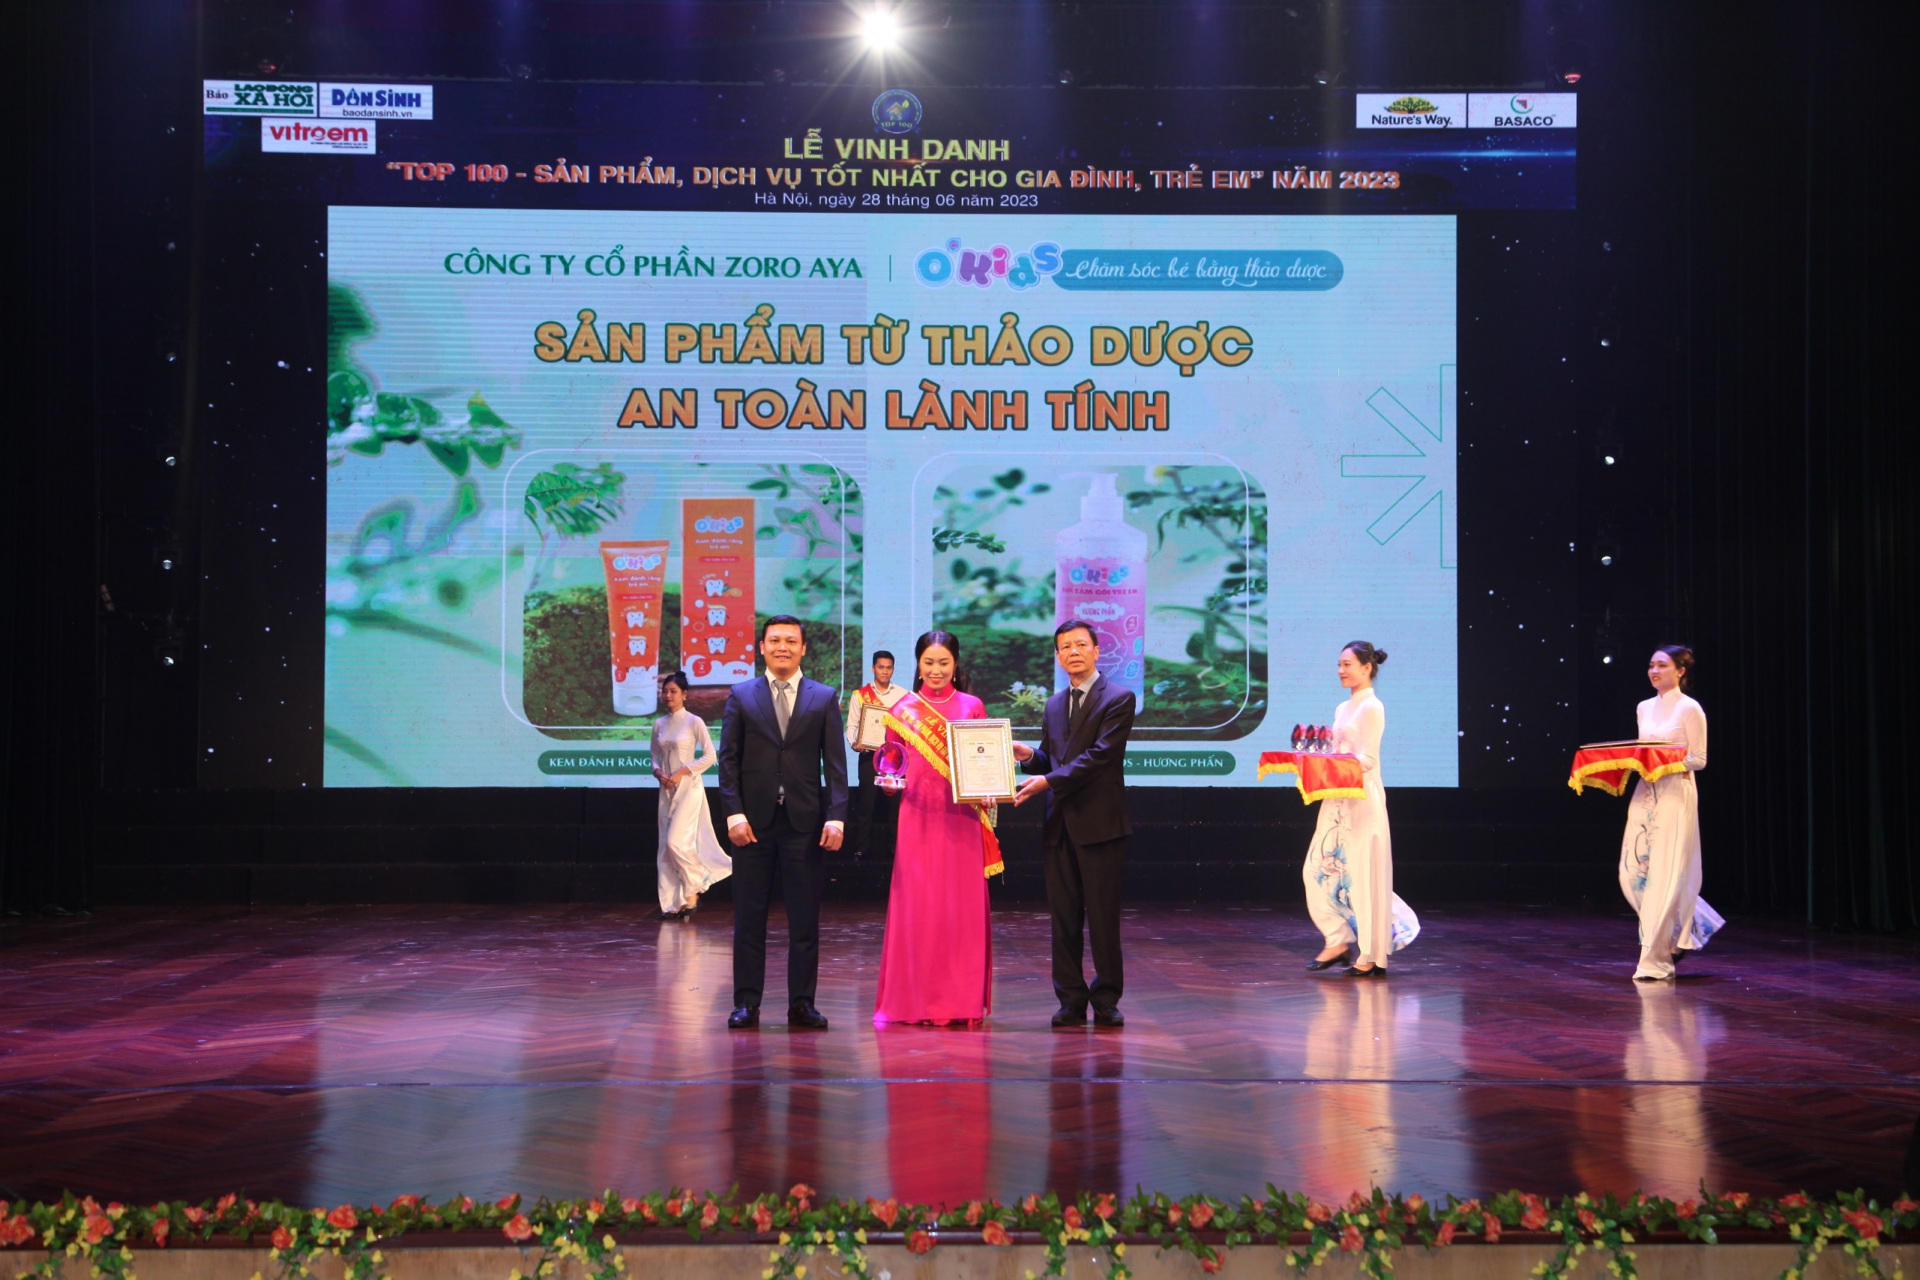 TGĐ Nguyễn Thị Hạnh - Đại diện Công ty cổ phần ZORO AYA nhận vinh danh tại chương trình